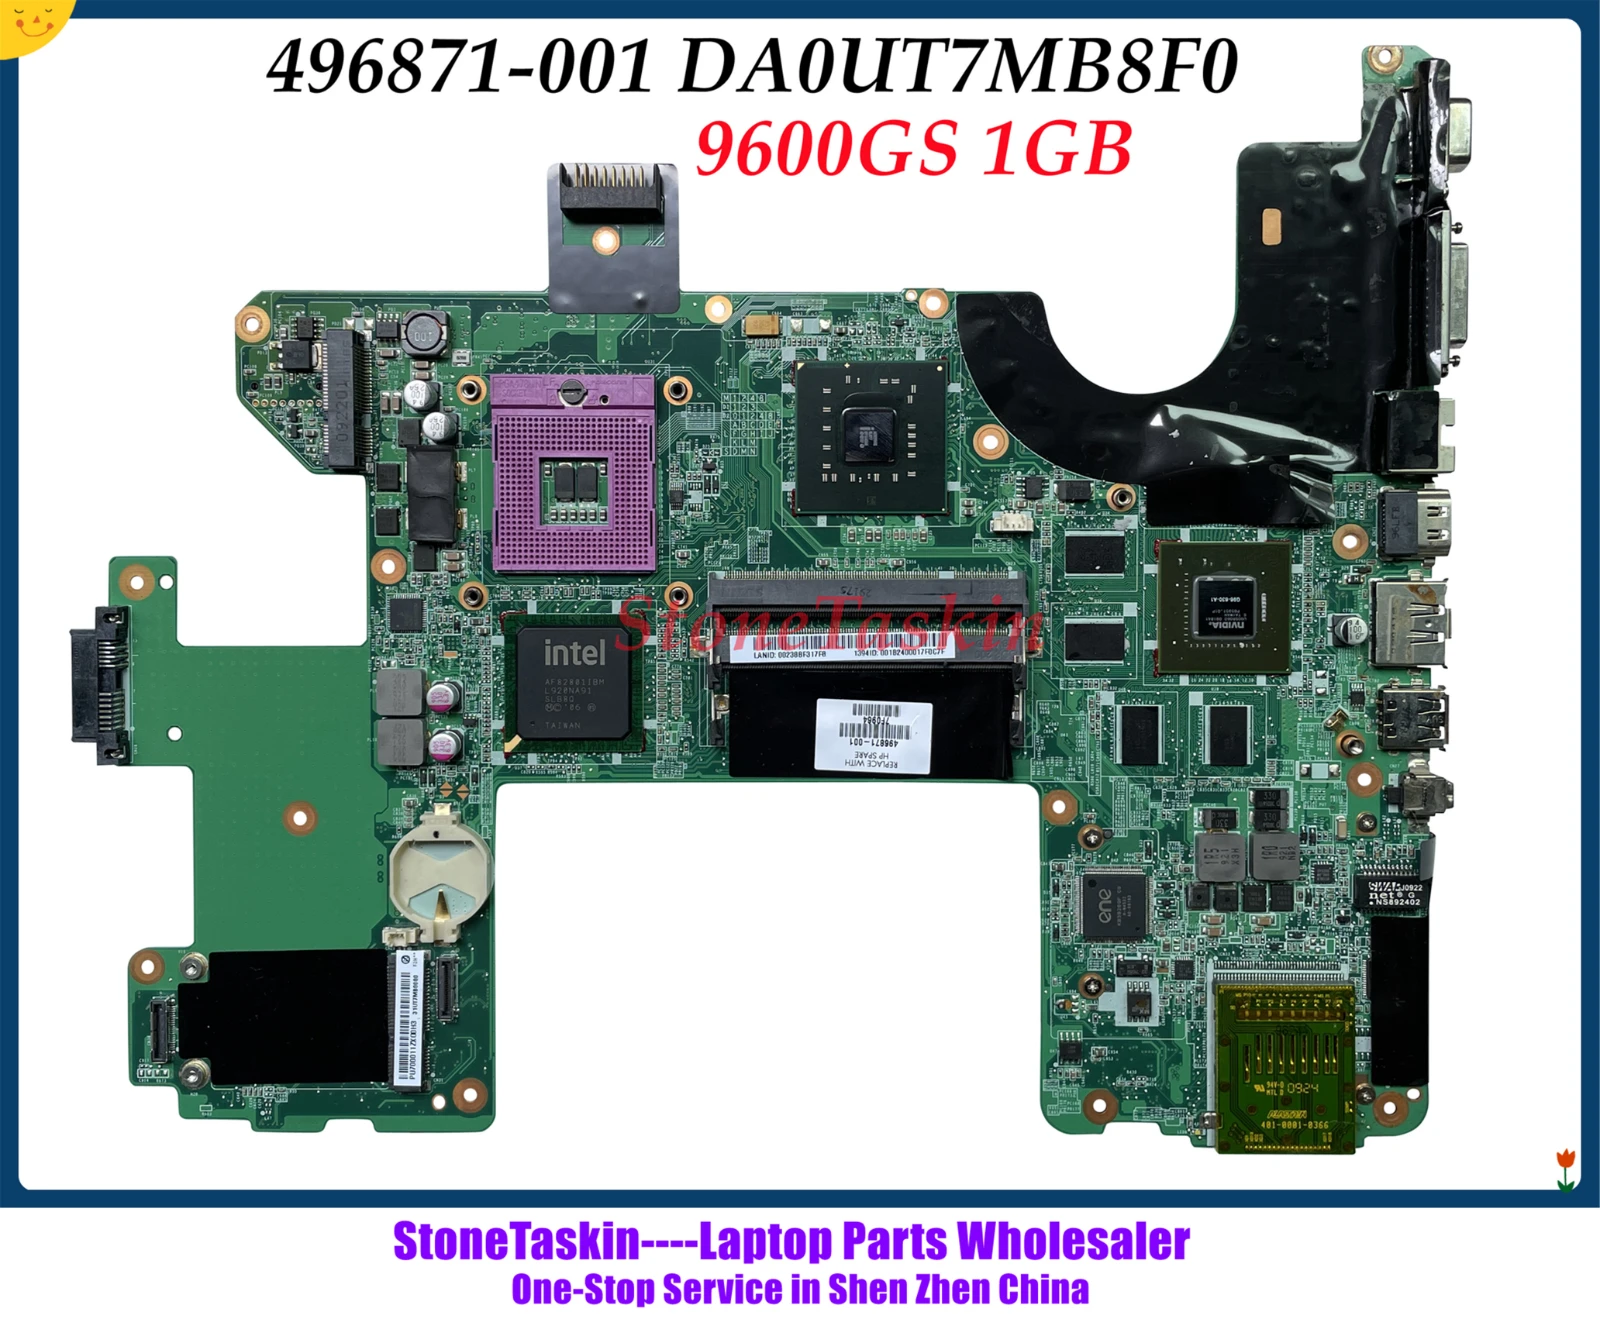 Материнская плата StoneTaskin 496871 001 для ноутбука HP Pavilion HDX18 материнская DA0UT7MB8F0 PM45 9600GS | Отзывы и видеообзор